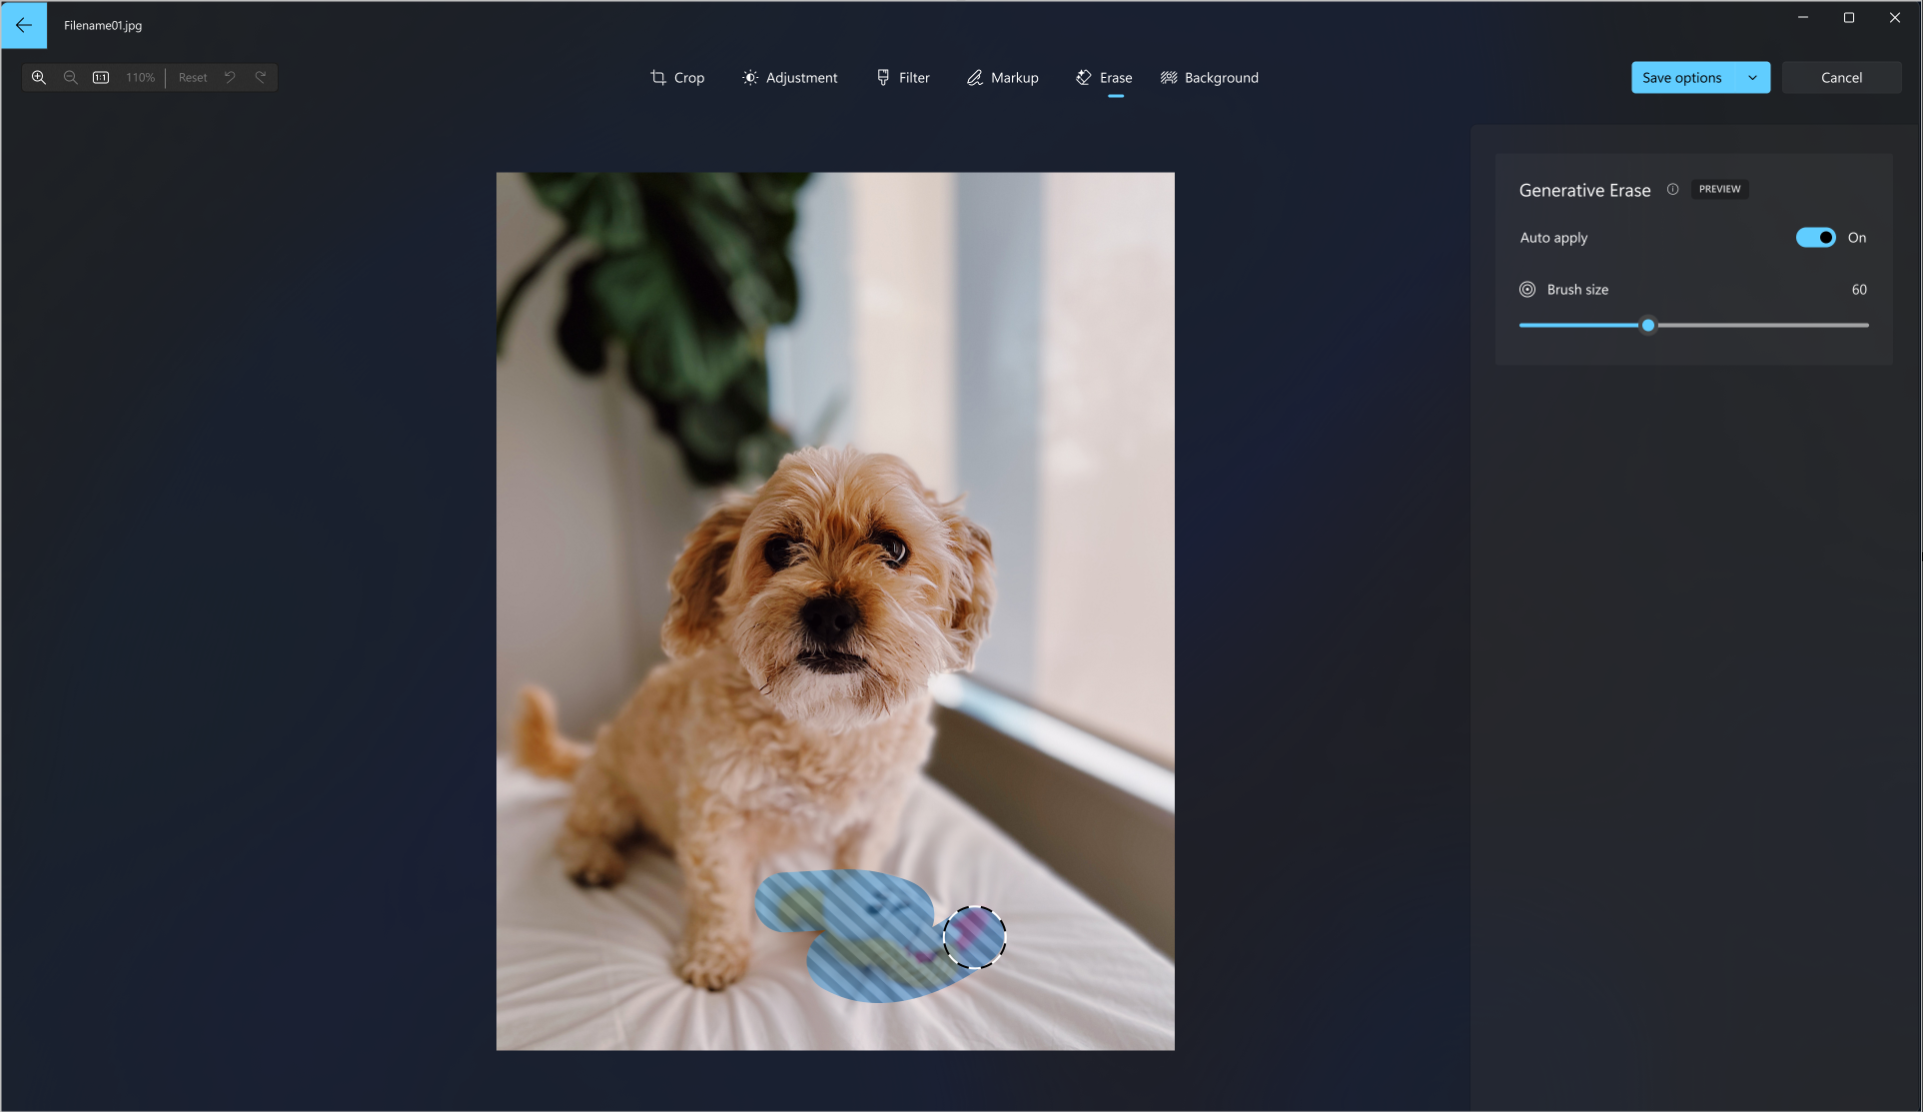 在狗的照片上使用生成擦除工具的屏幕截图，用于从图片中擦除狗玩具。